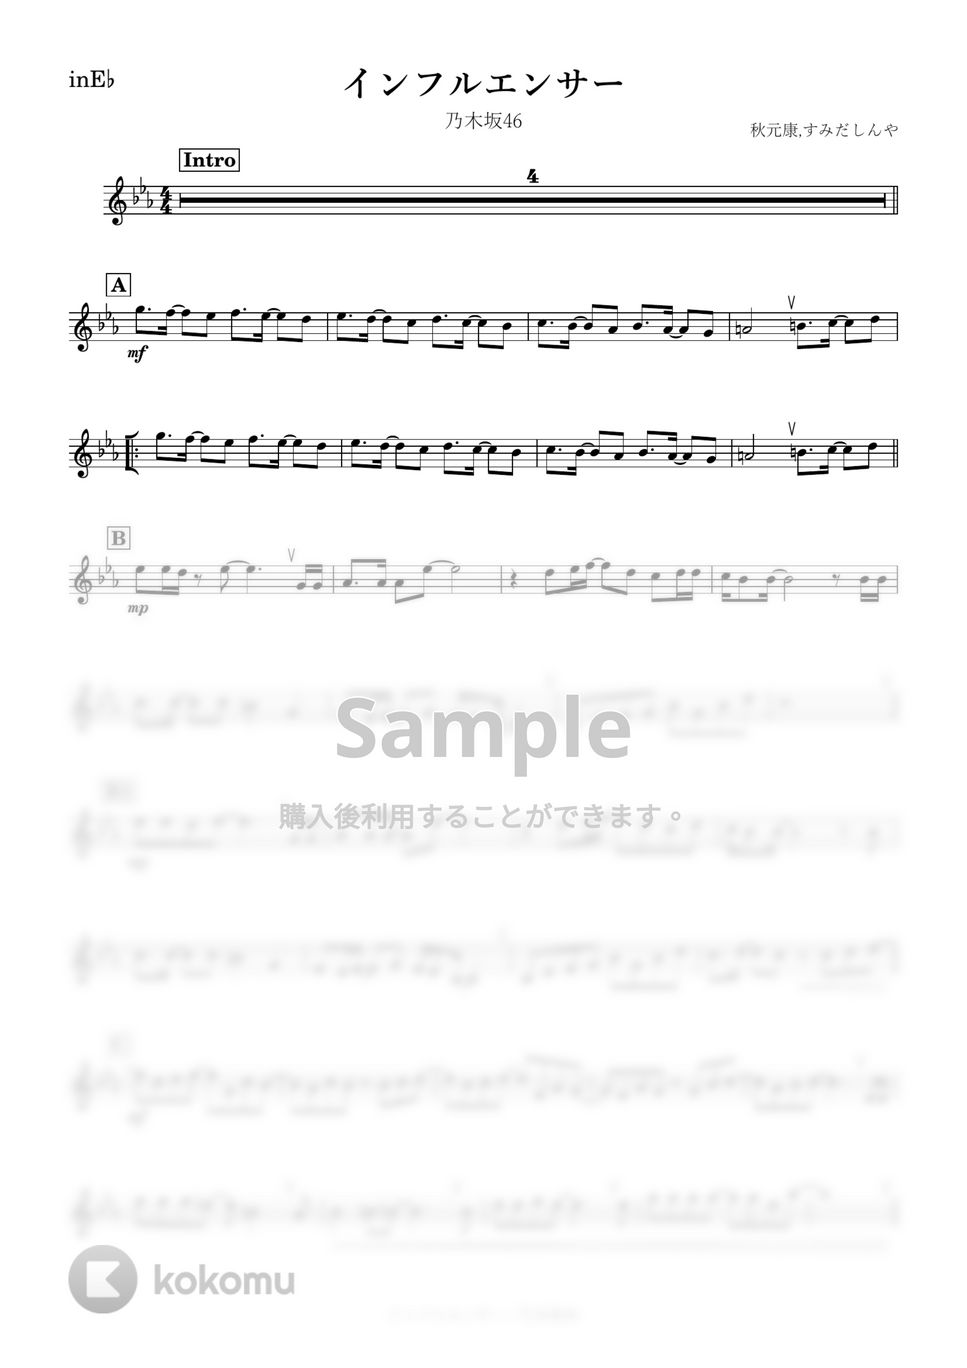 乃木坂46 - インフルエンサー (E♭) by kanamusic